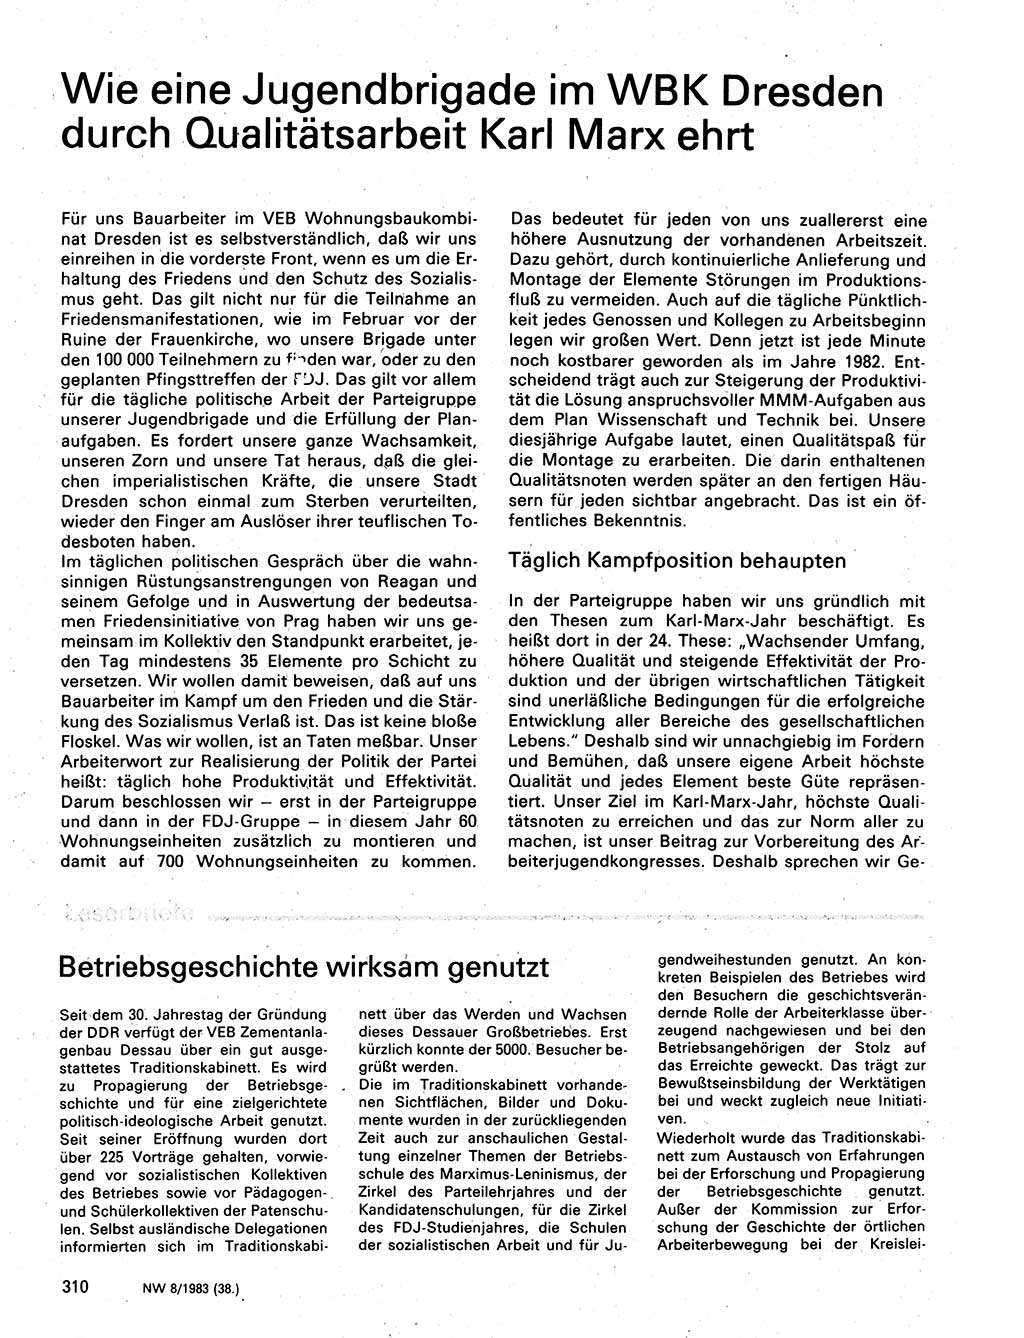 Neuer Weg (NW), Organ des Zentralkomitees (ZK) der SED (Sozialistische Einheitspartei Deutschlands) für Fragen des Parteilebens, 38. Jahrgang [Deutsche Demokratische Republik (DDR)] 1983, Seite 310 (NW ZK SED DDR 1983, S. 310)